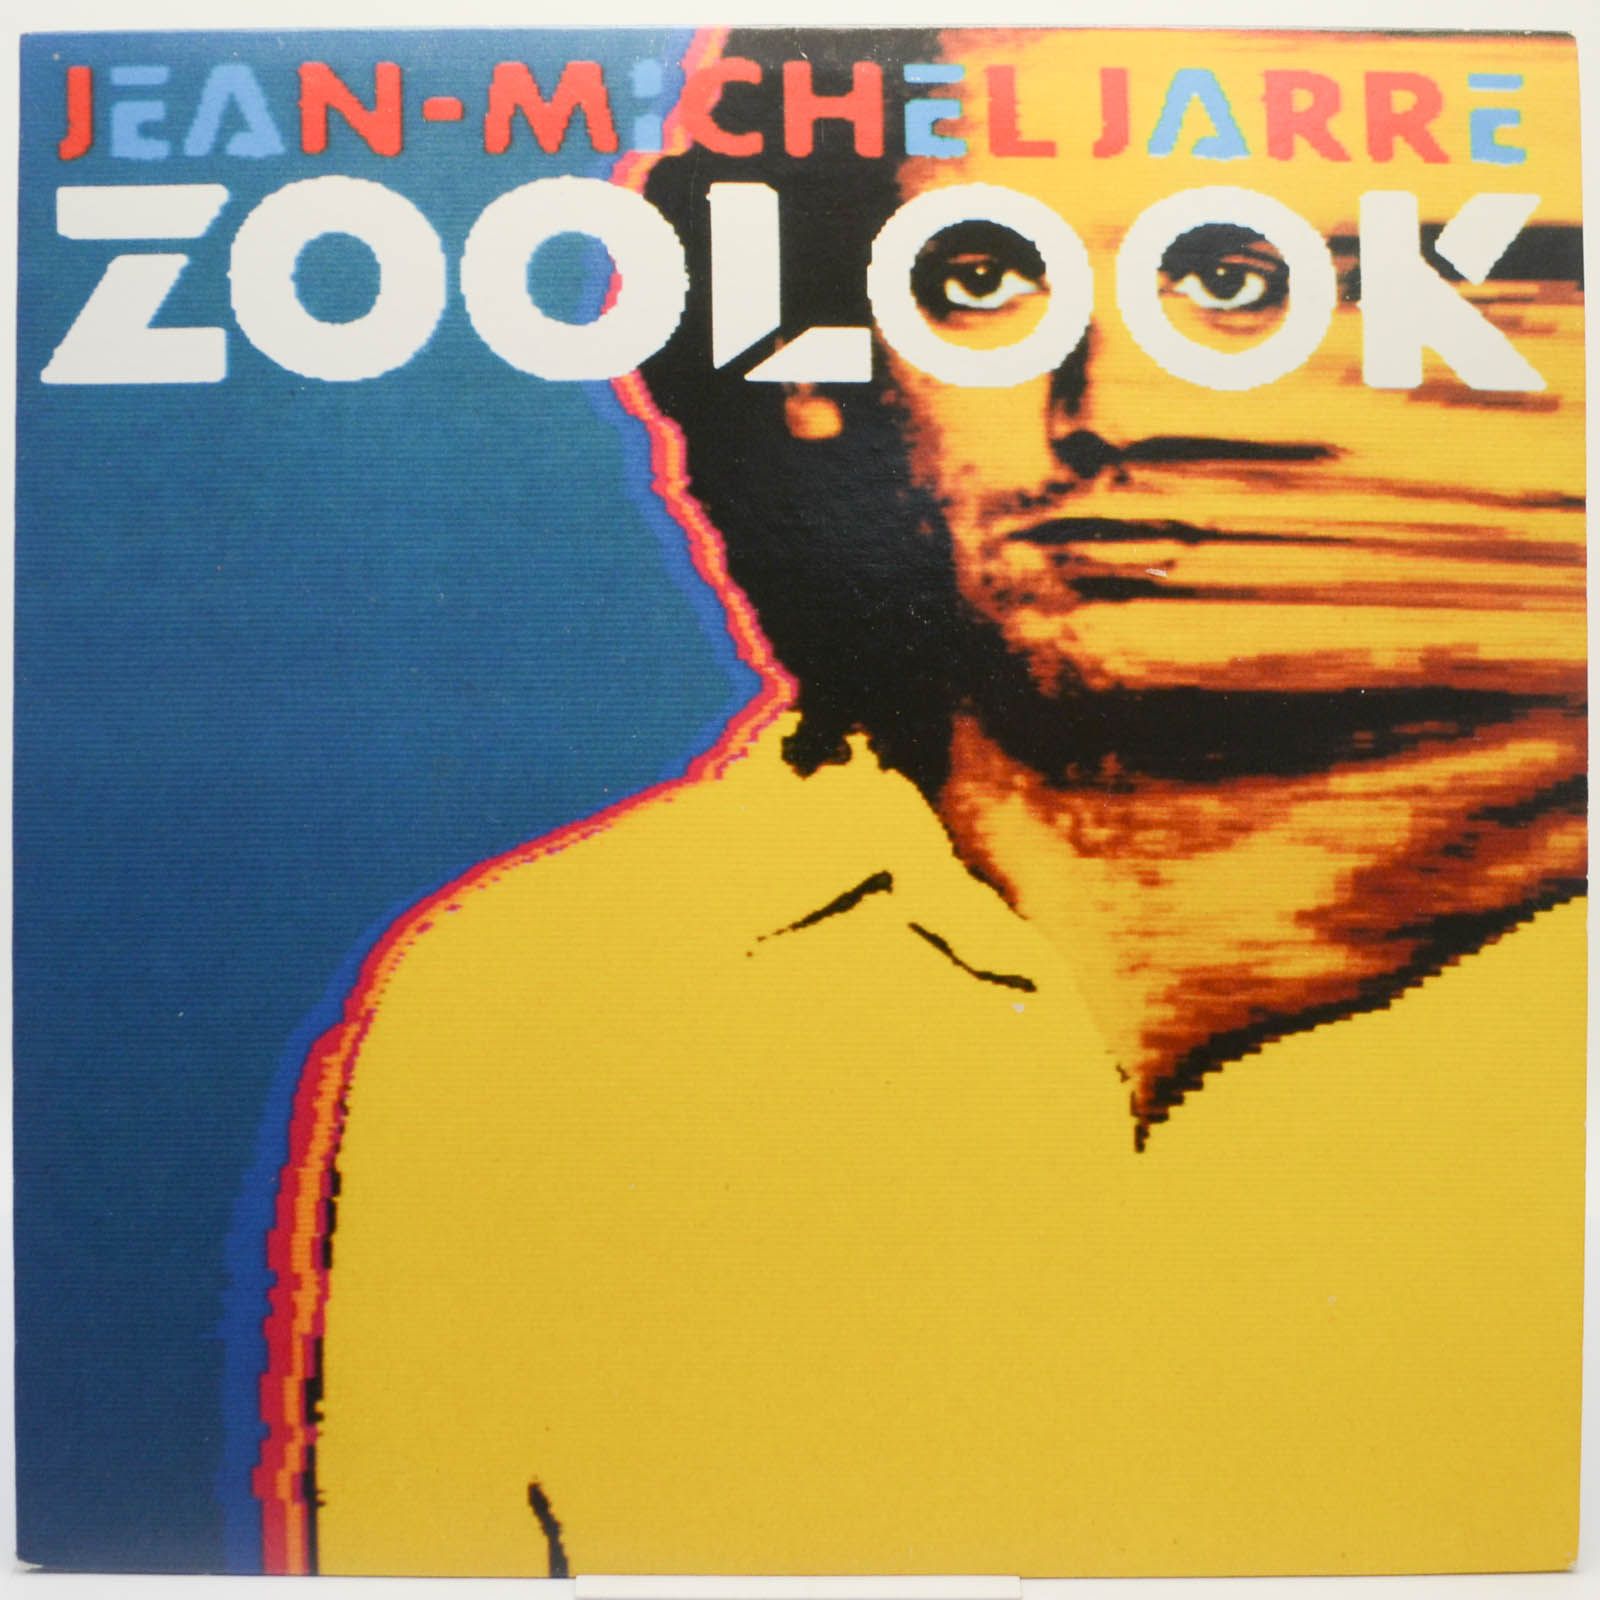 Jean-Michel Jarre — Zoolook, 1984